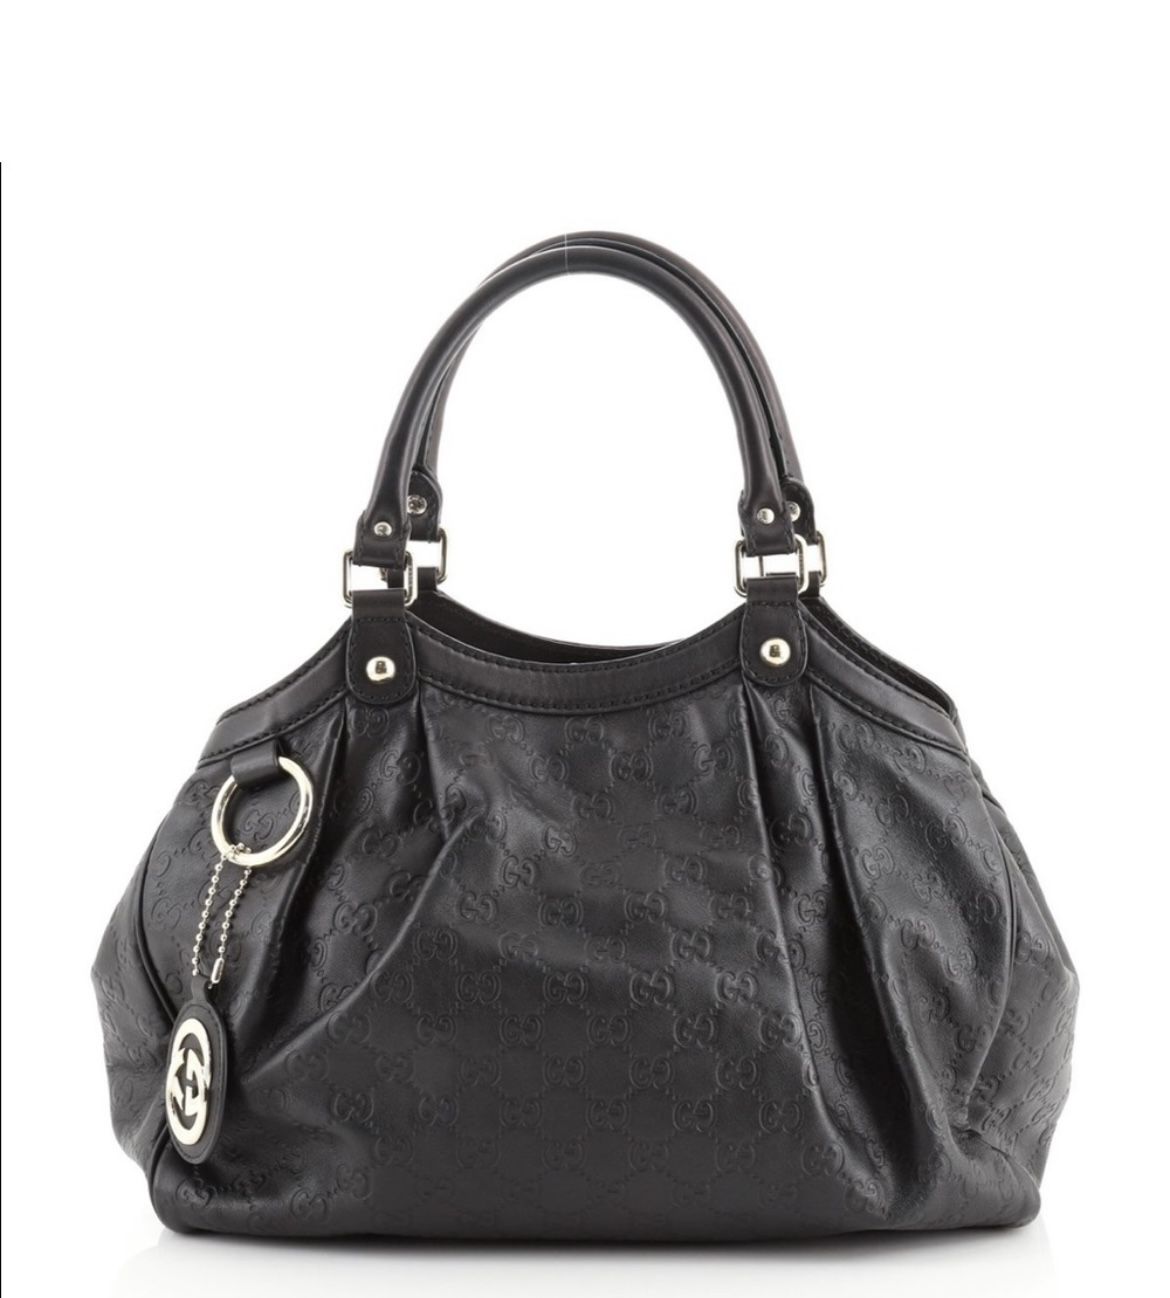 Gucci Guccissima Black Leather Tote Bag